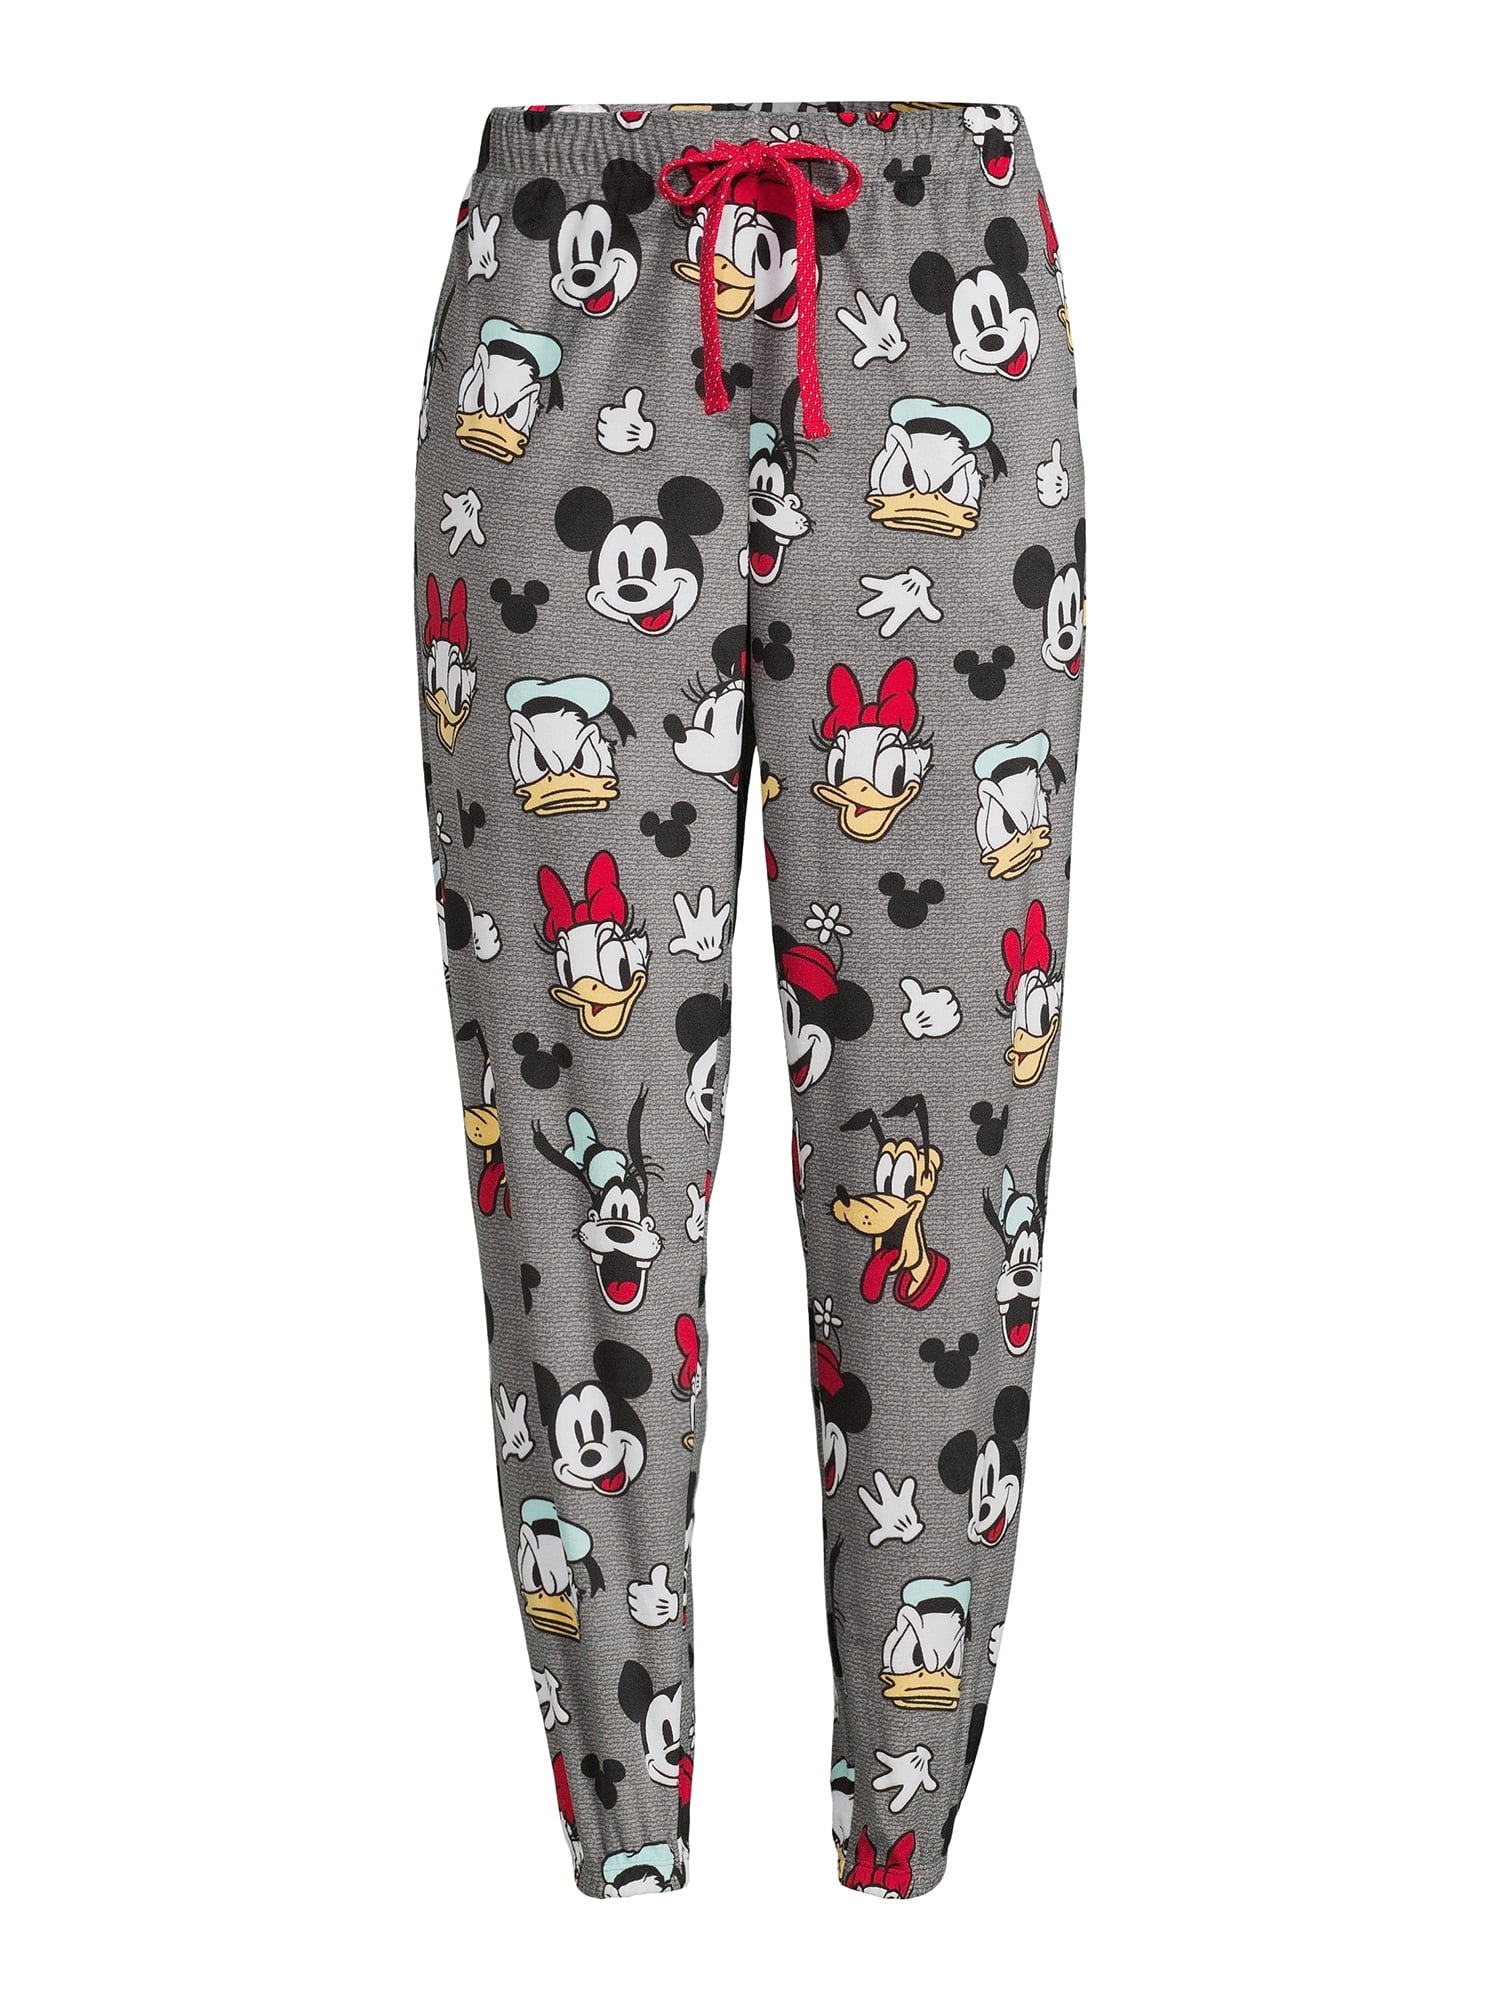 New and affordable Disney pajama pants just debuted at Walmart